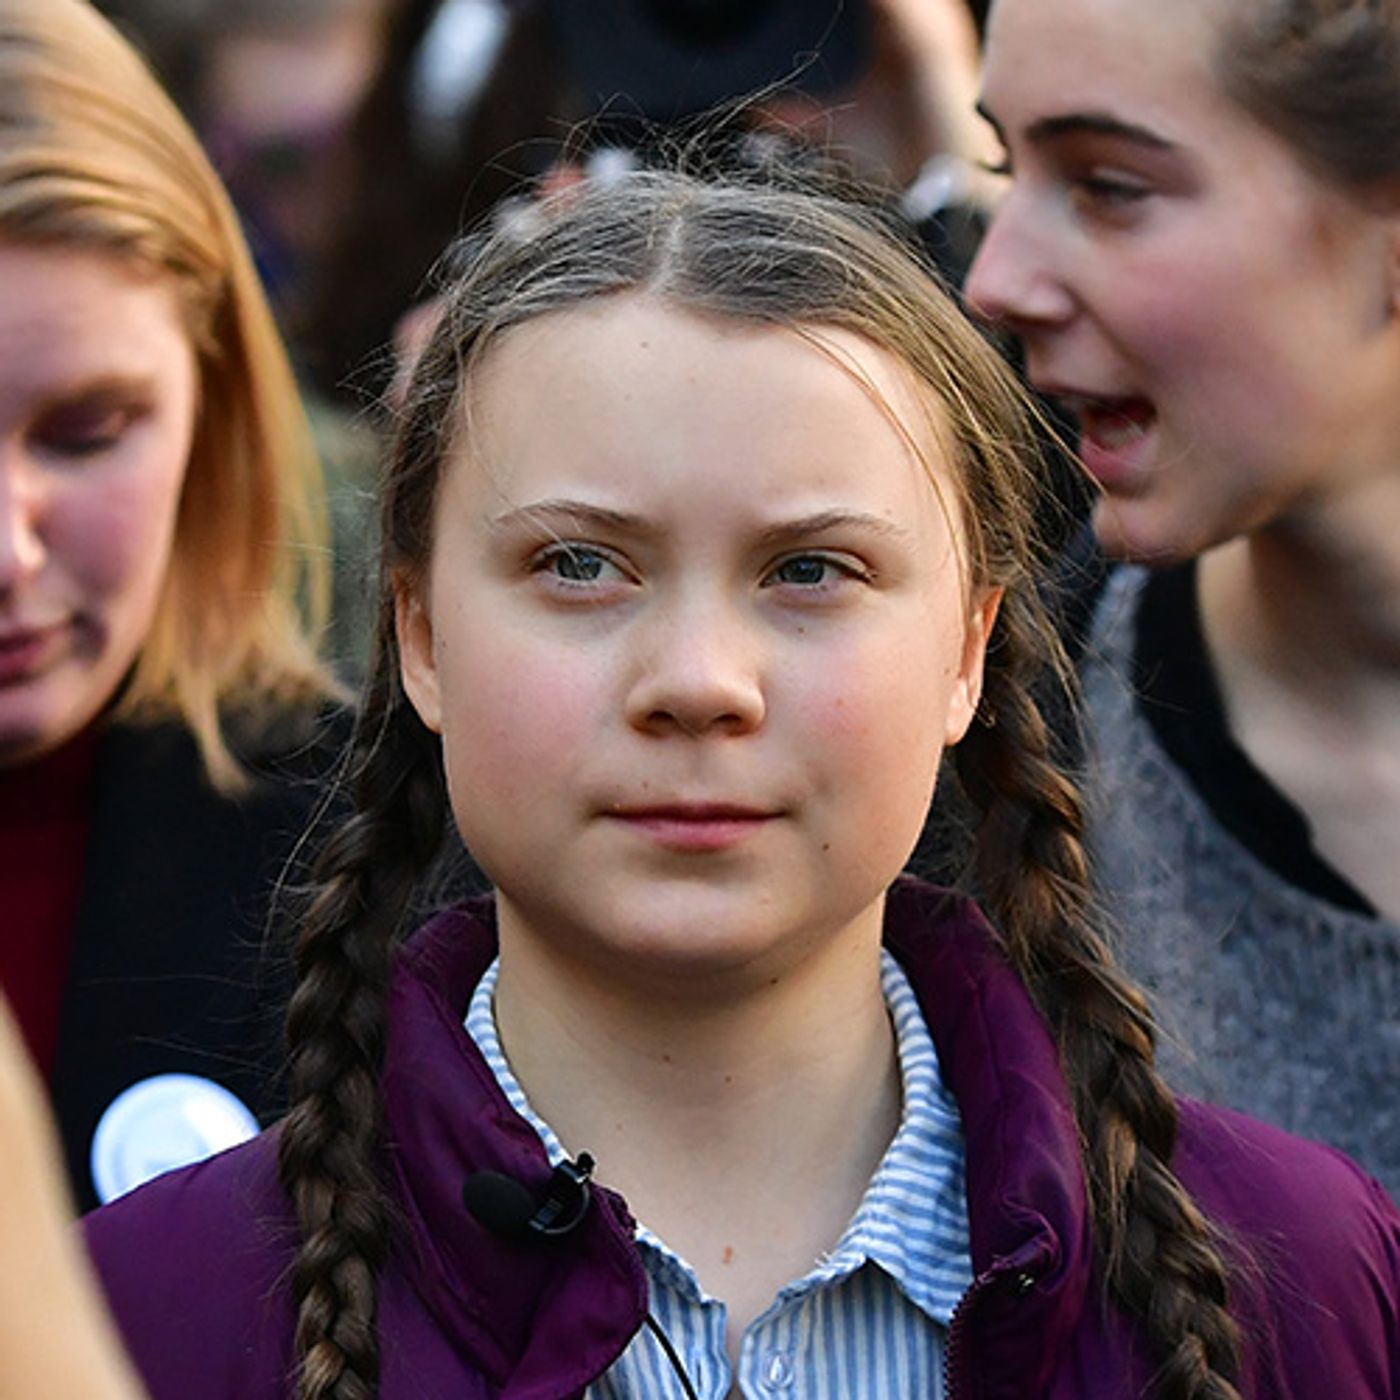 La storia di Greta Thunberg e dei giovani che lottano per il clima